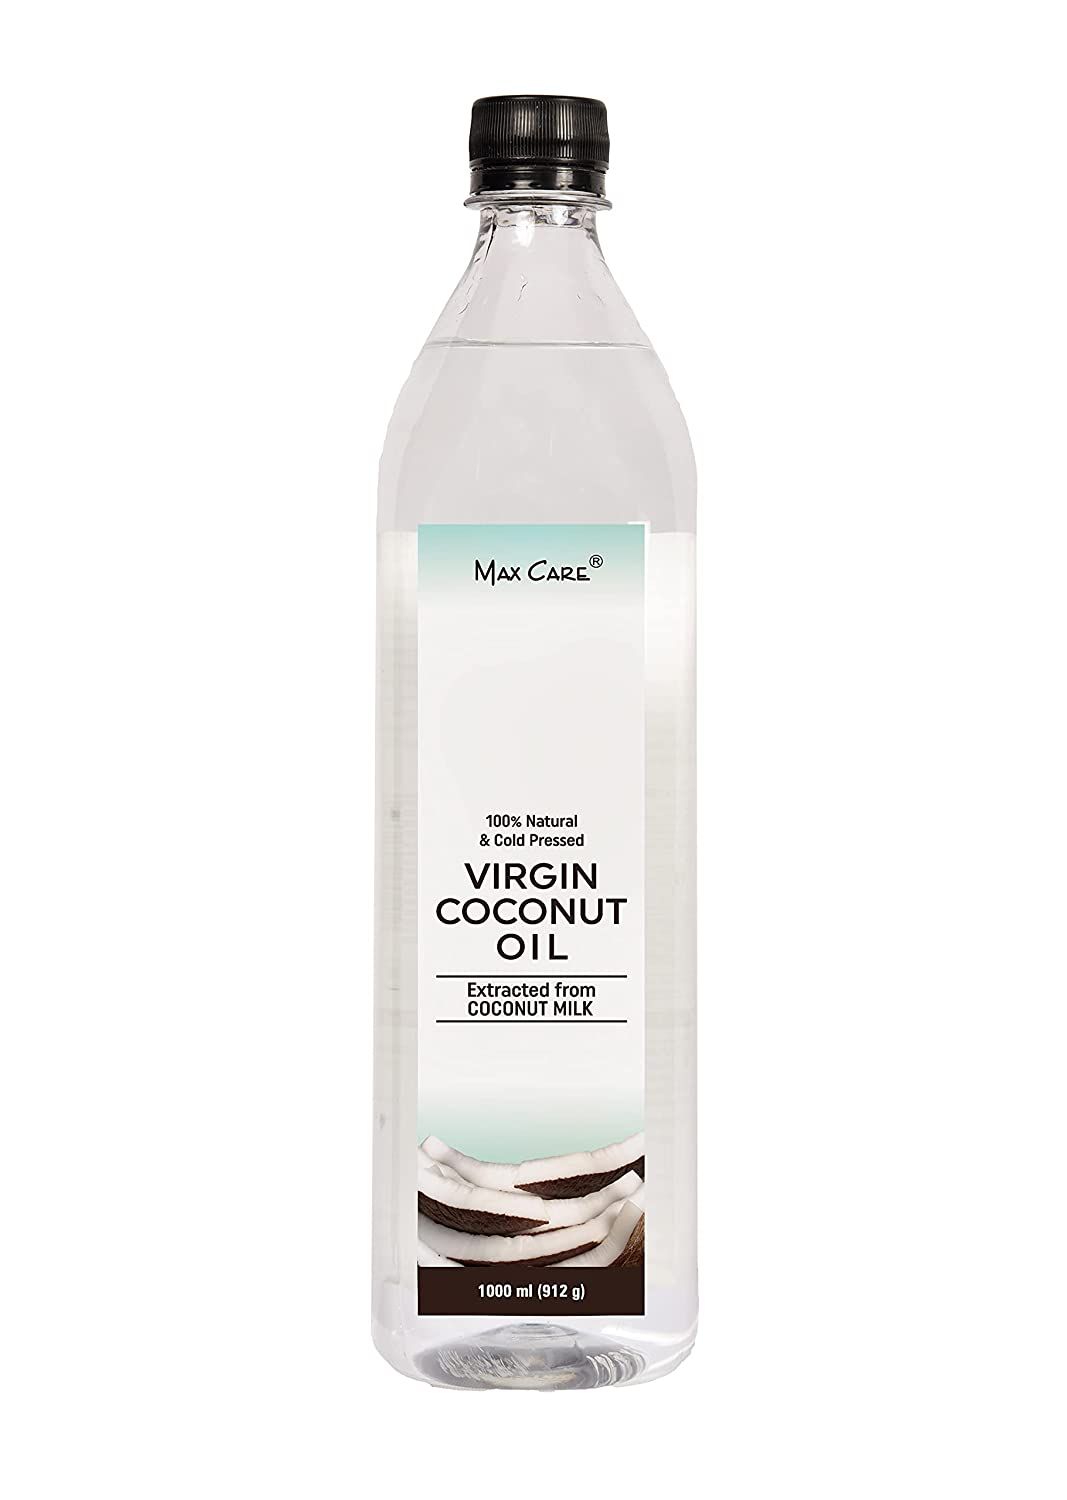 Max Care Virgin Coconut Oil Image